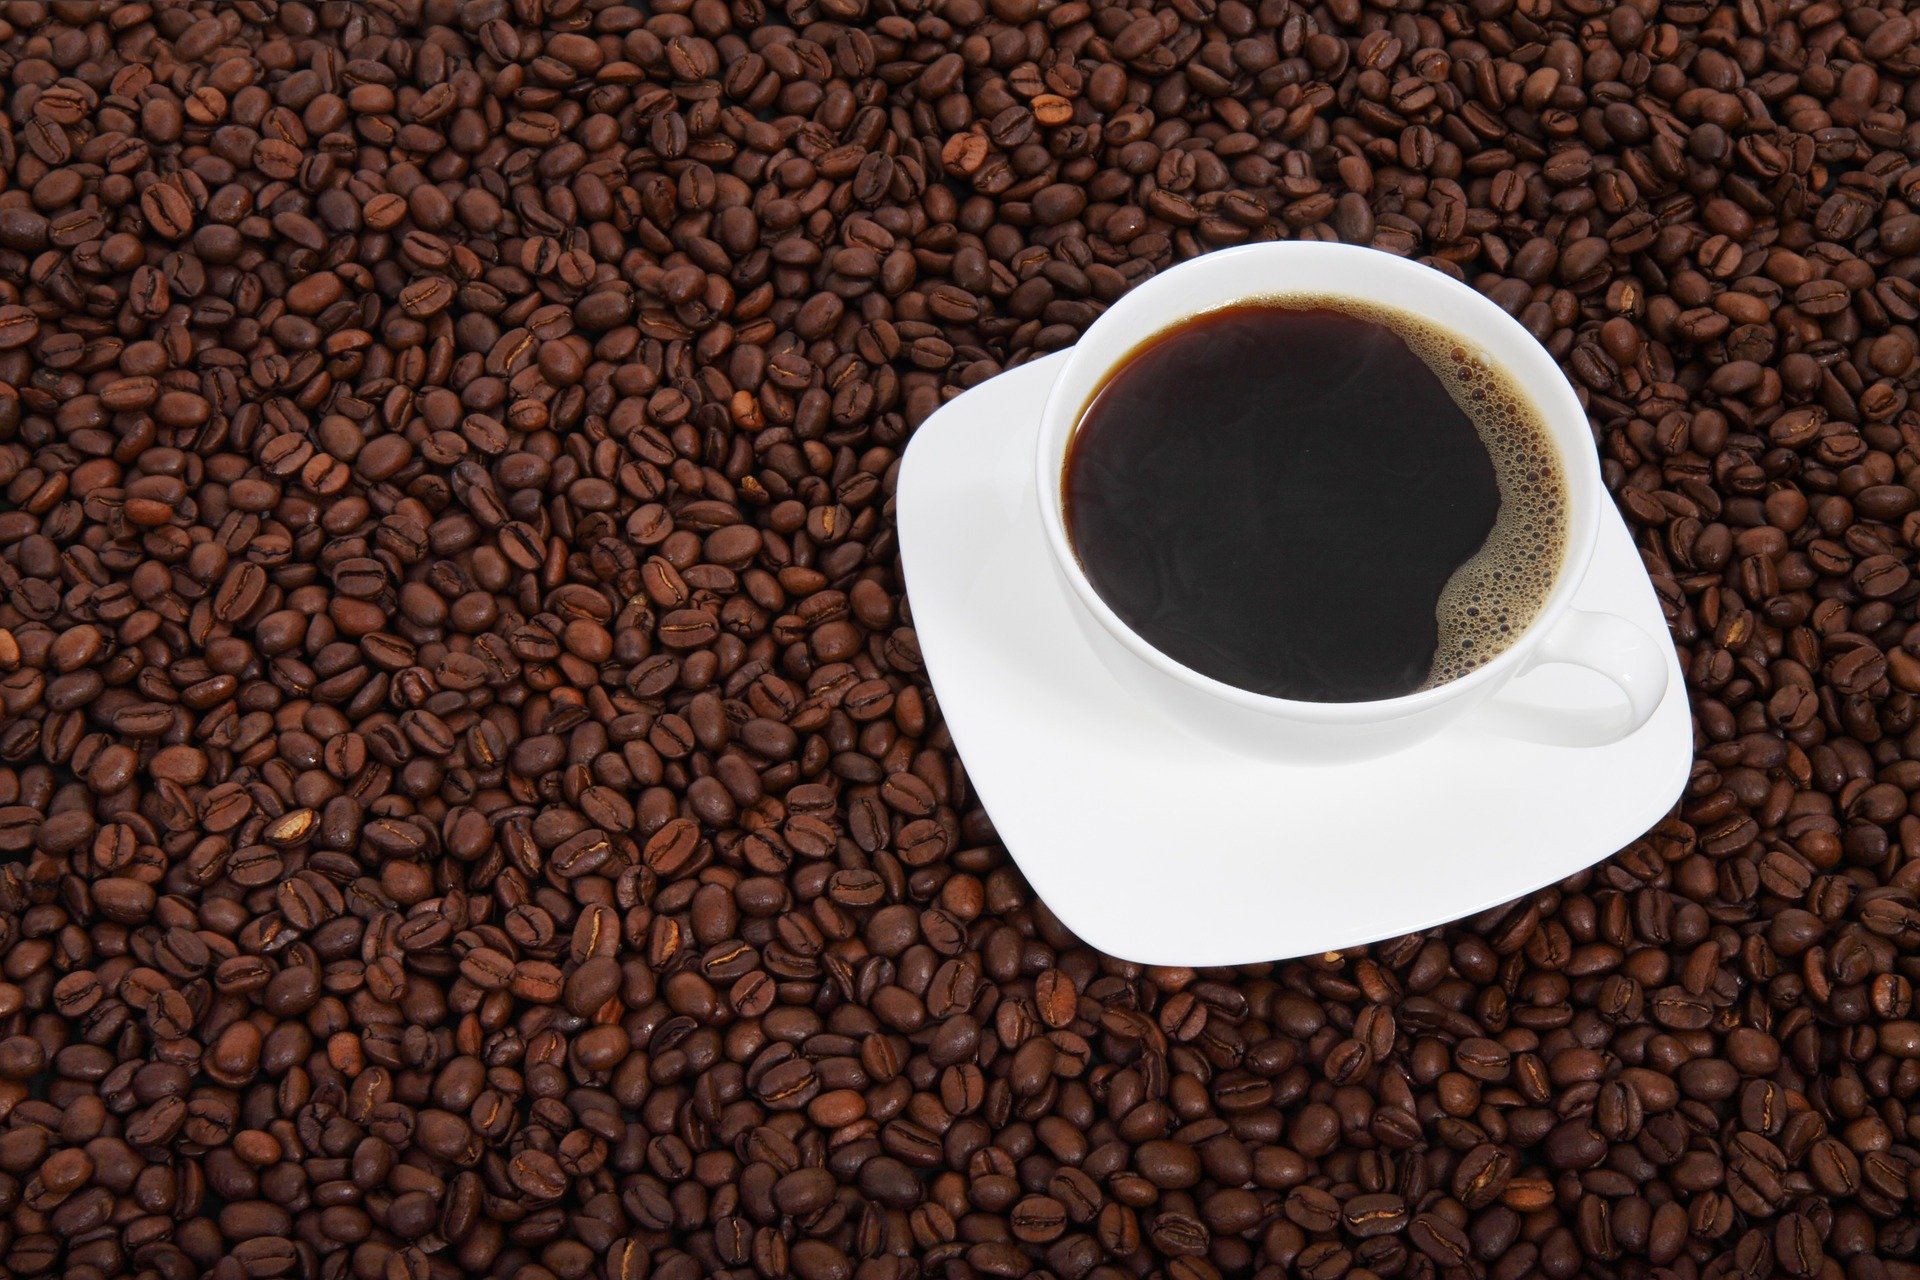 El 1 de octubre se celebra el Día Internacional del Café. (Foto Prensa Libre: Pixabay)